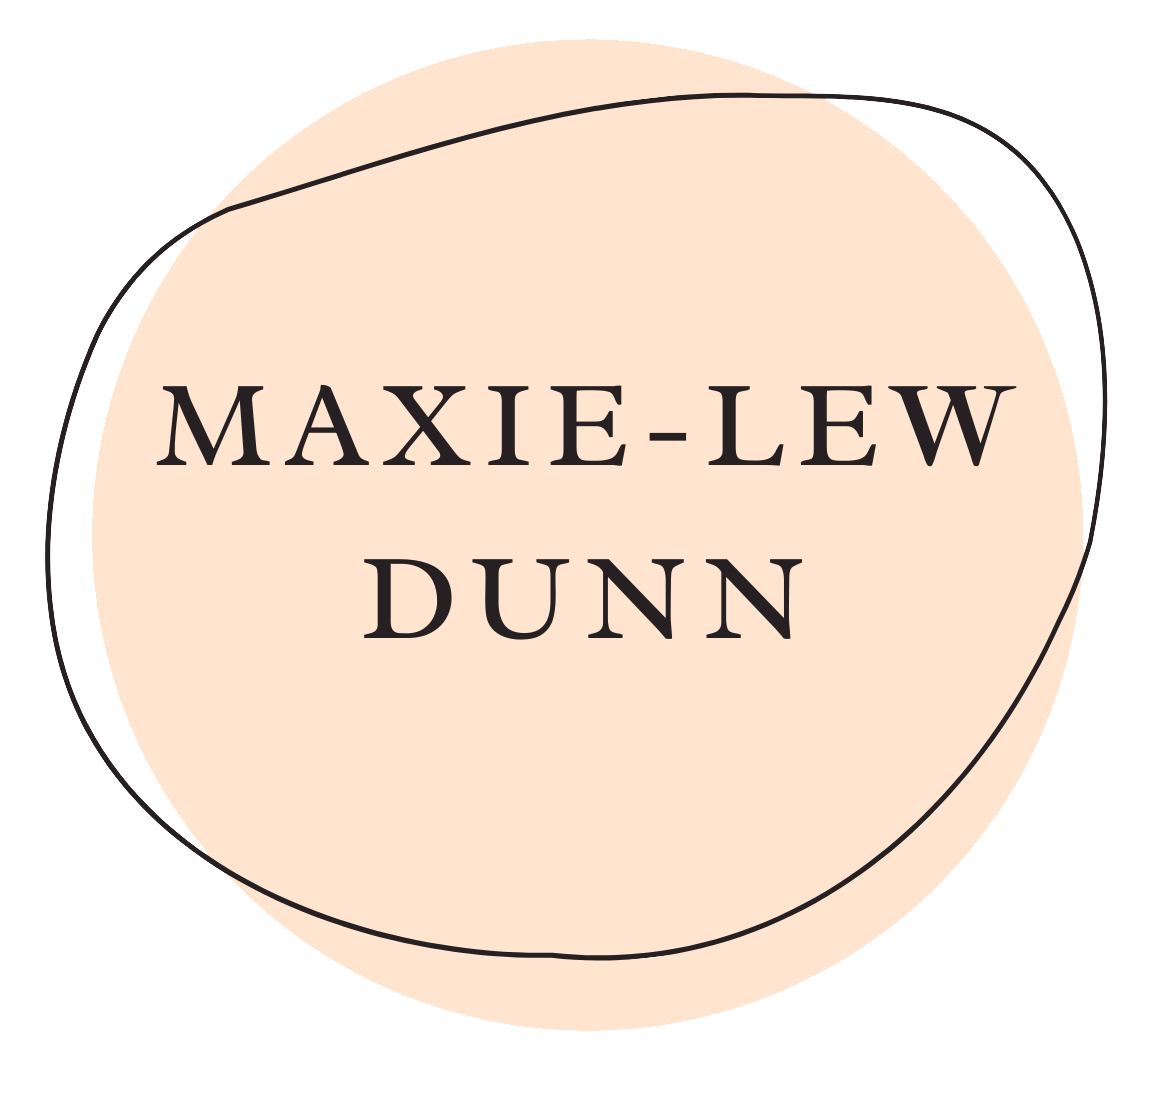 Maxie-Lew's Portfolio